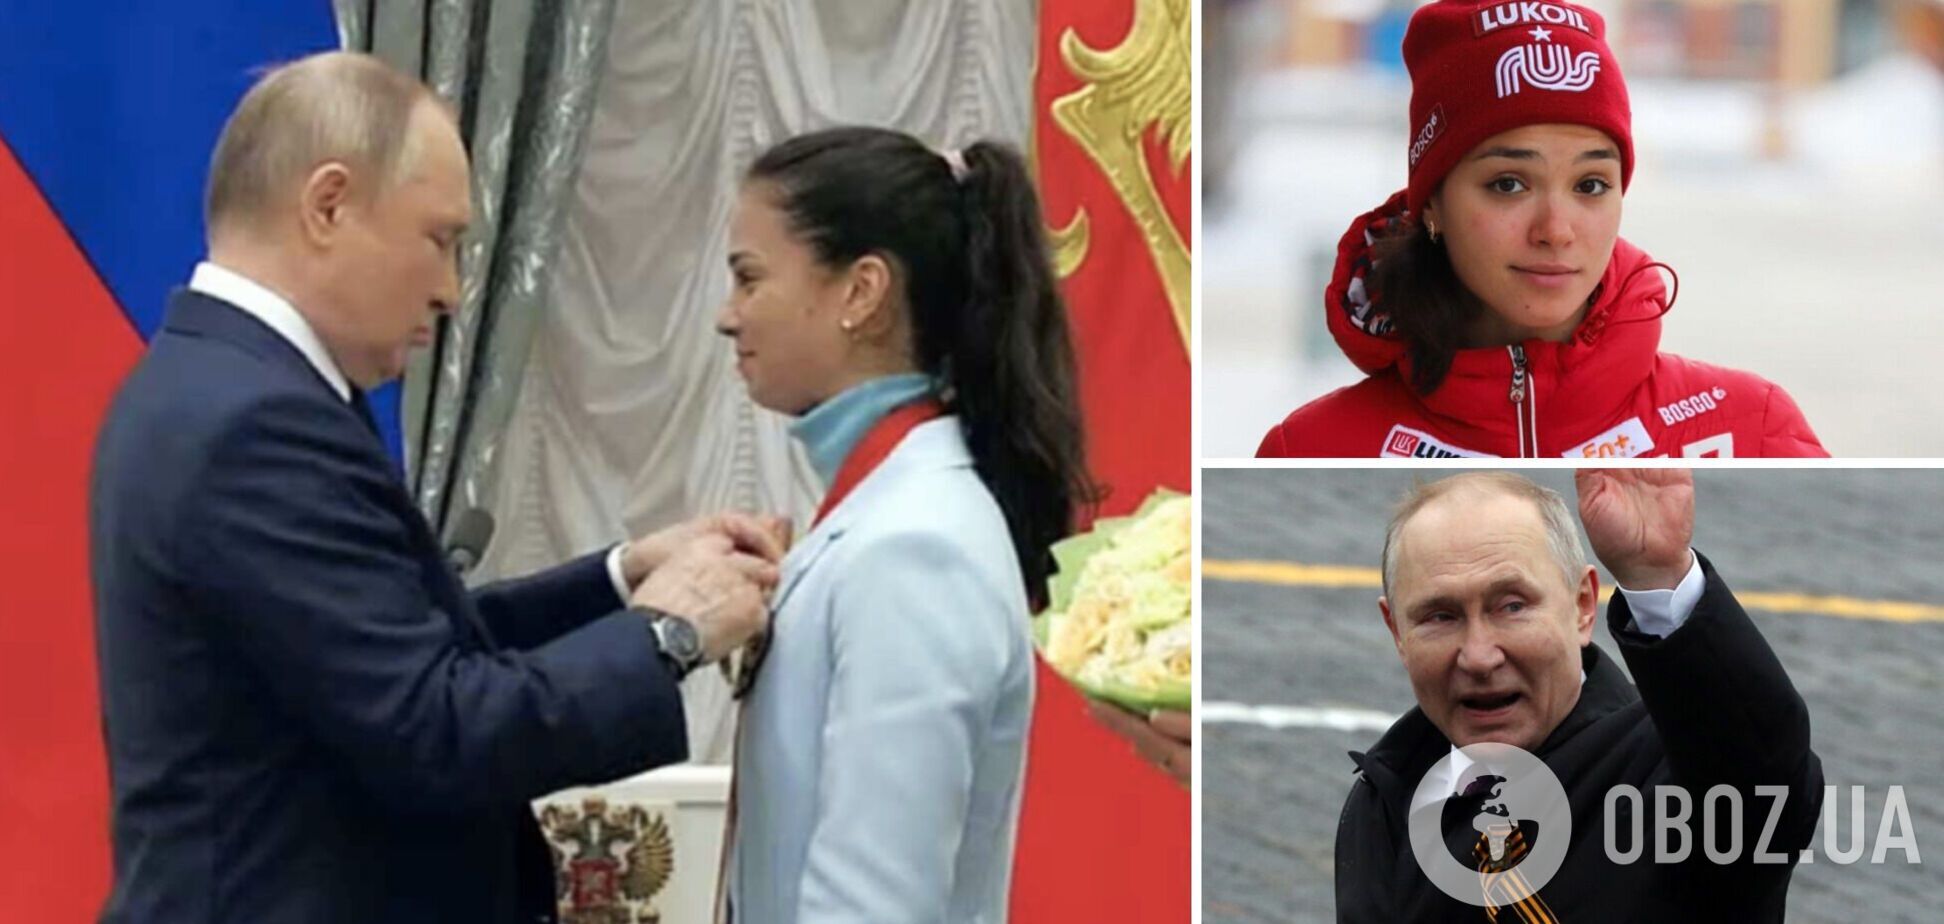 Олимпийская чемпионка из России восхитилась 'Путиным, которого избрал народ' и стала посмешищем